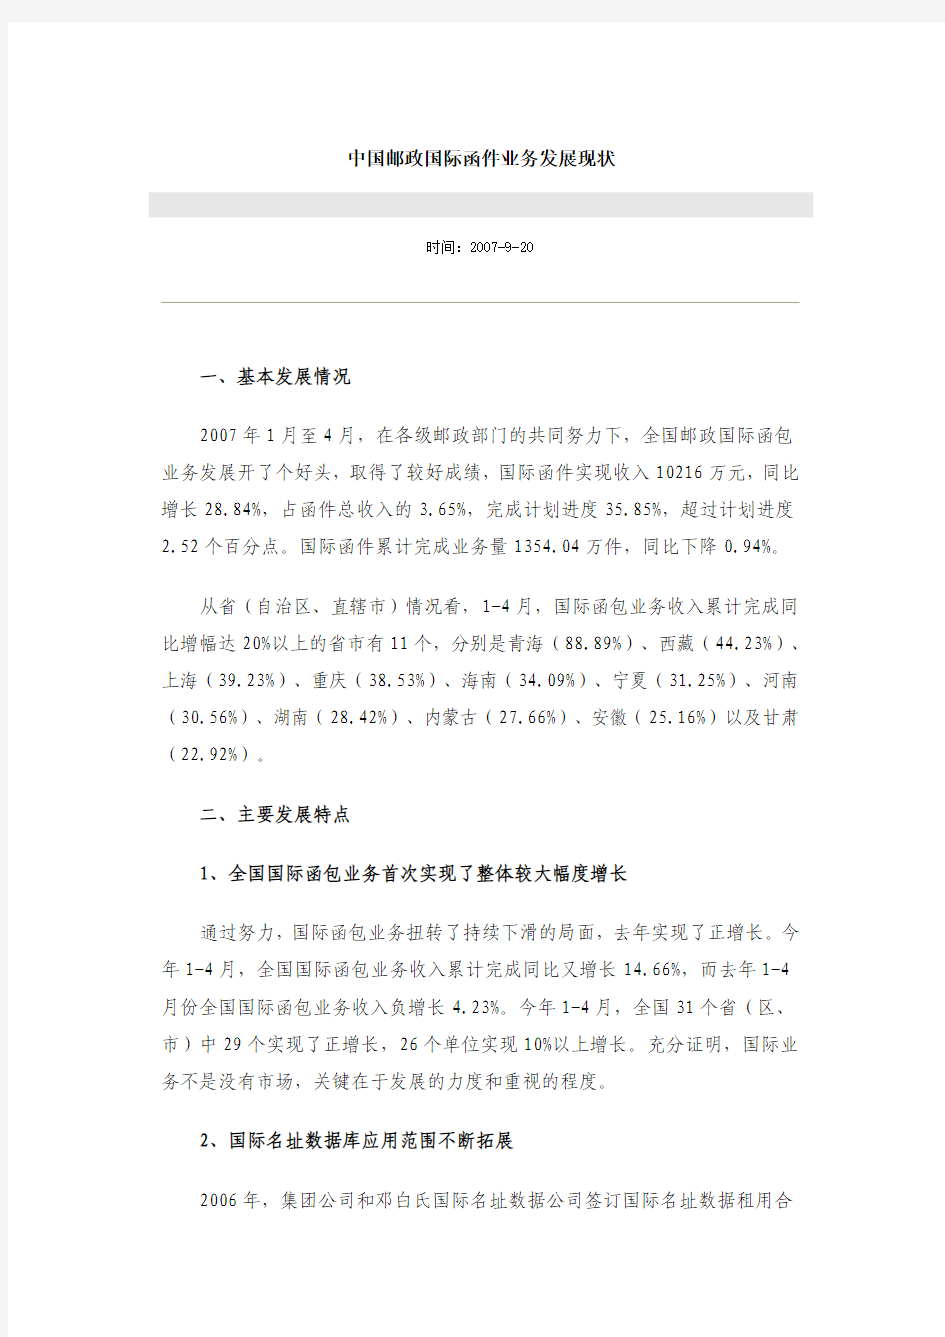 中国邮政国际函件业务发展现状